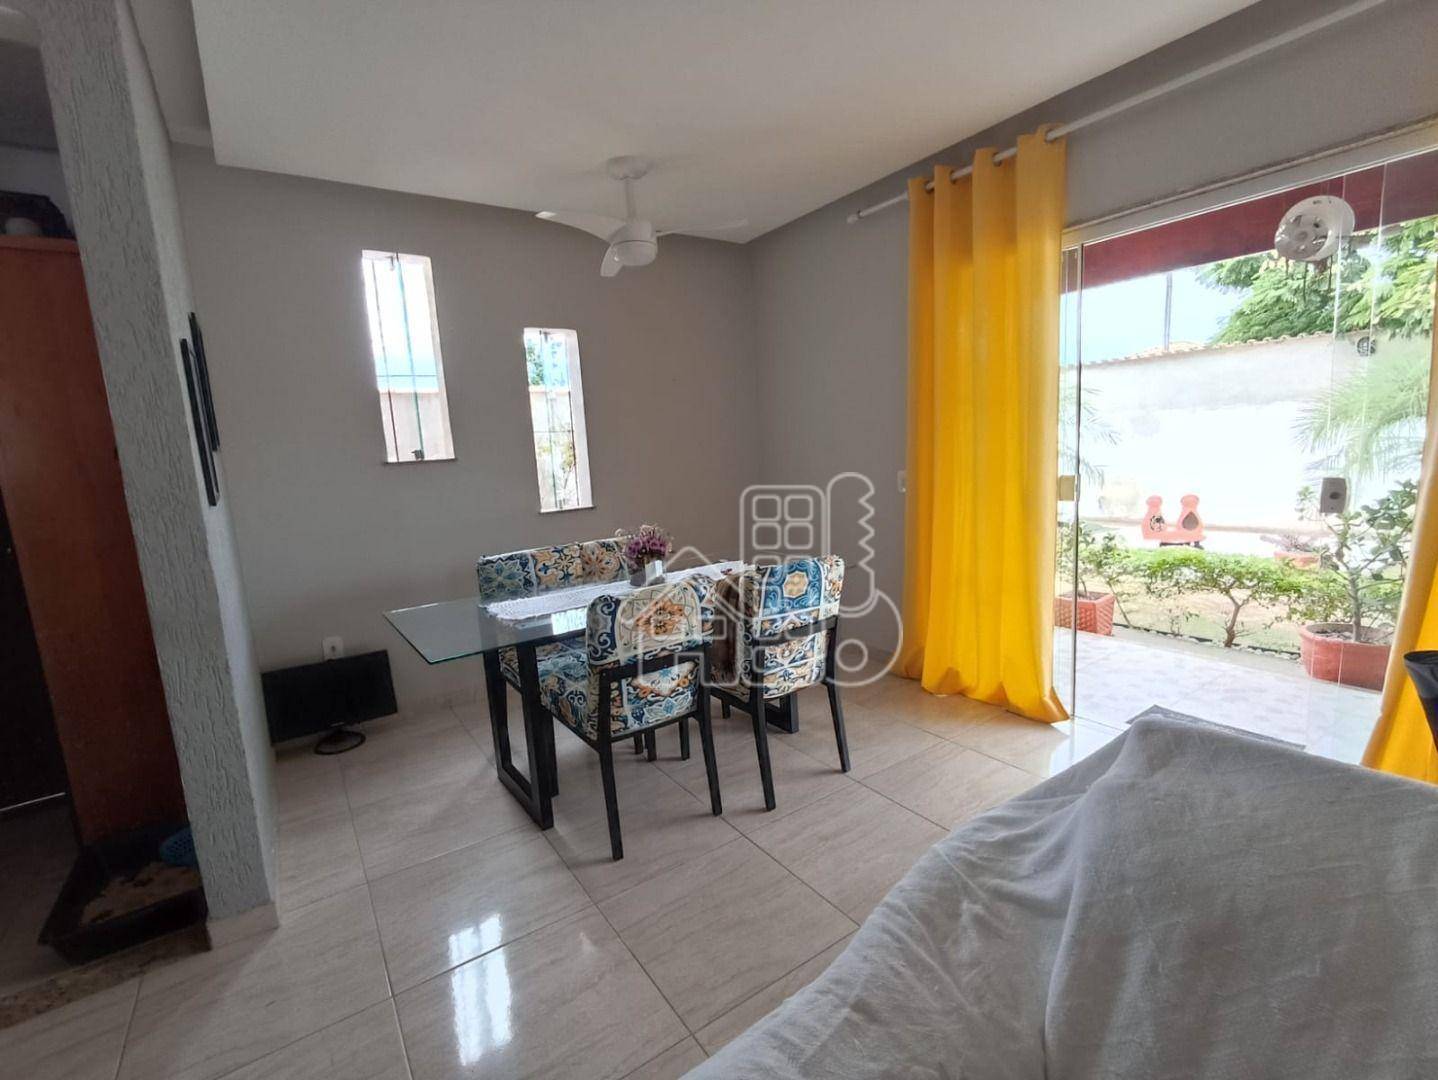 Casa com 4 dormitórios à venda, 130 m² por R$ 618.000,00 - Jardim Atlântico Leste (Itaipuaçu) - Maricá/RJ